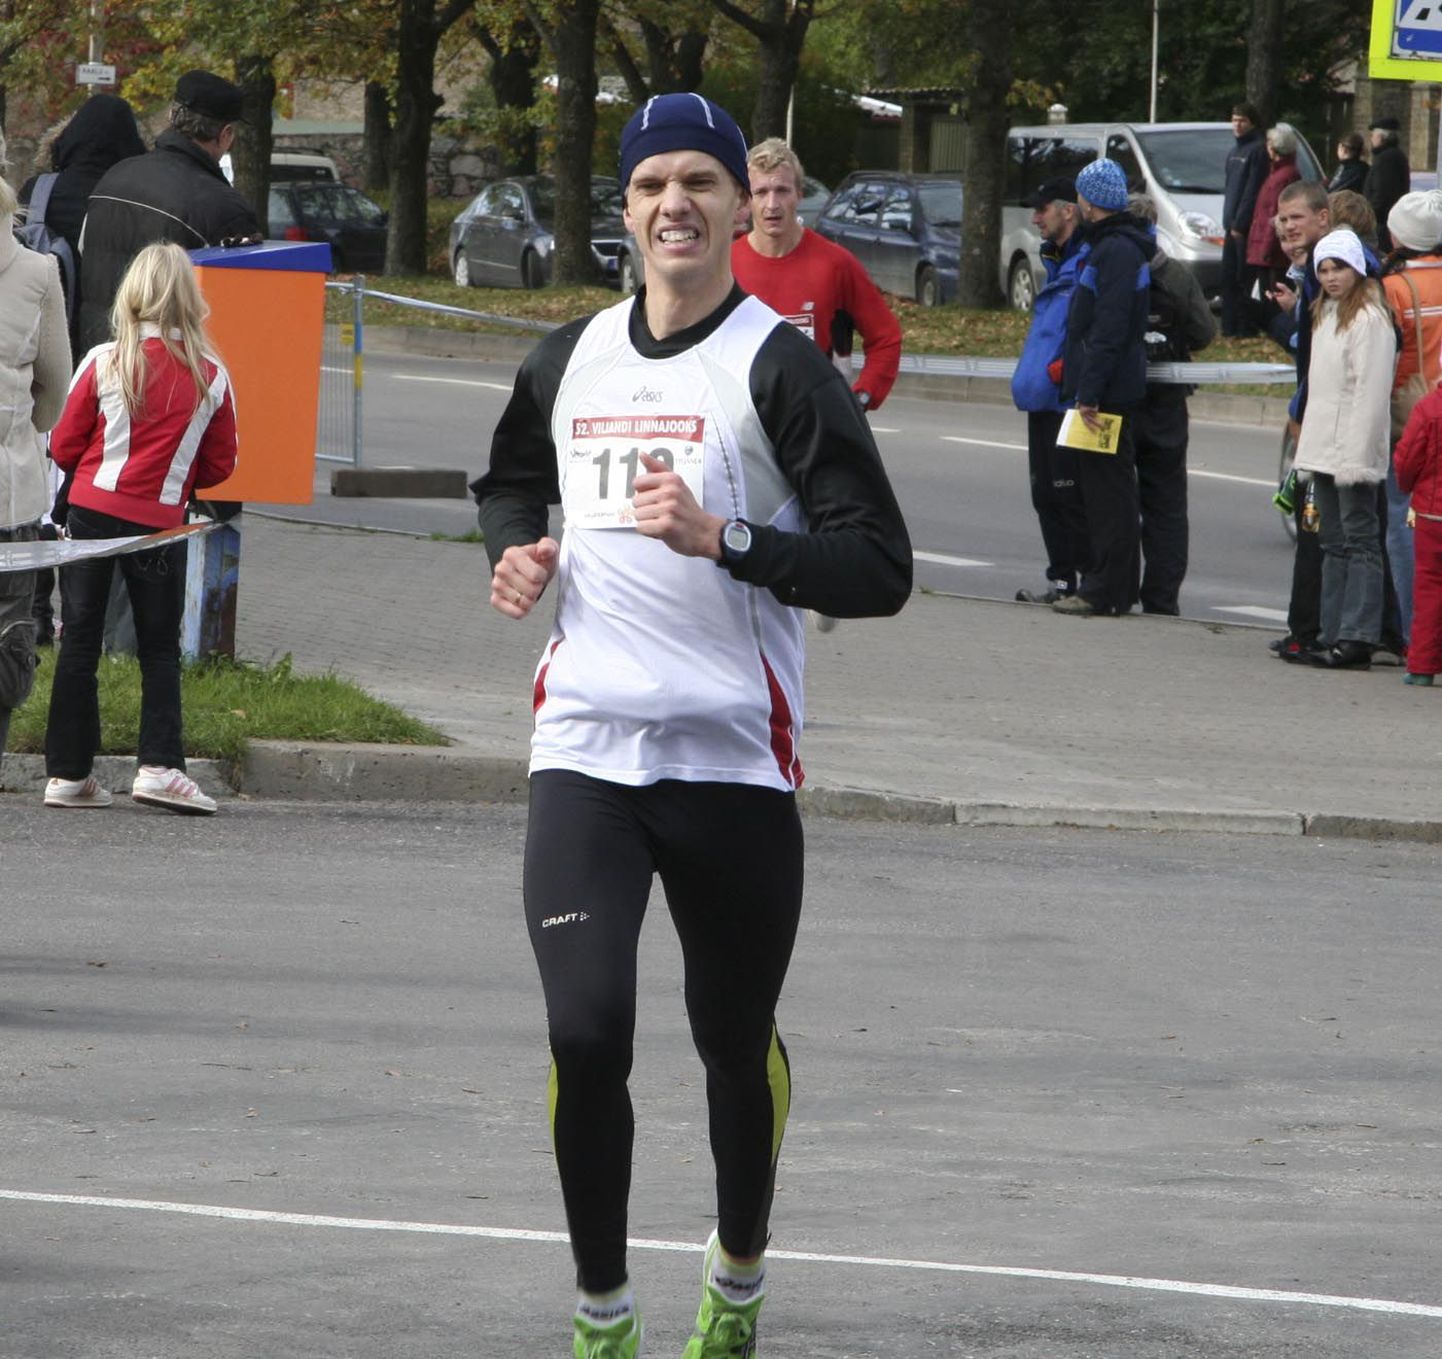 Viljandi vastupidavusalade klubi Staier esindaja Kristjan Vares lõpetas Eesti maratonijooksu meistrivõistlused kuuenda kohaga. Oma esimese maratoni ajaks sai ta 2:43.58. Pilt on tehtud eelmisel sügisel Viljandi linnajooksul.